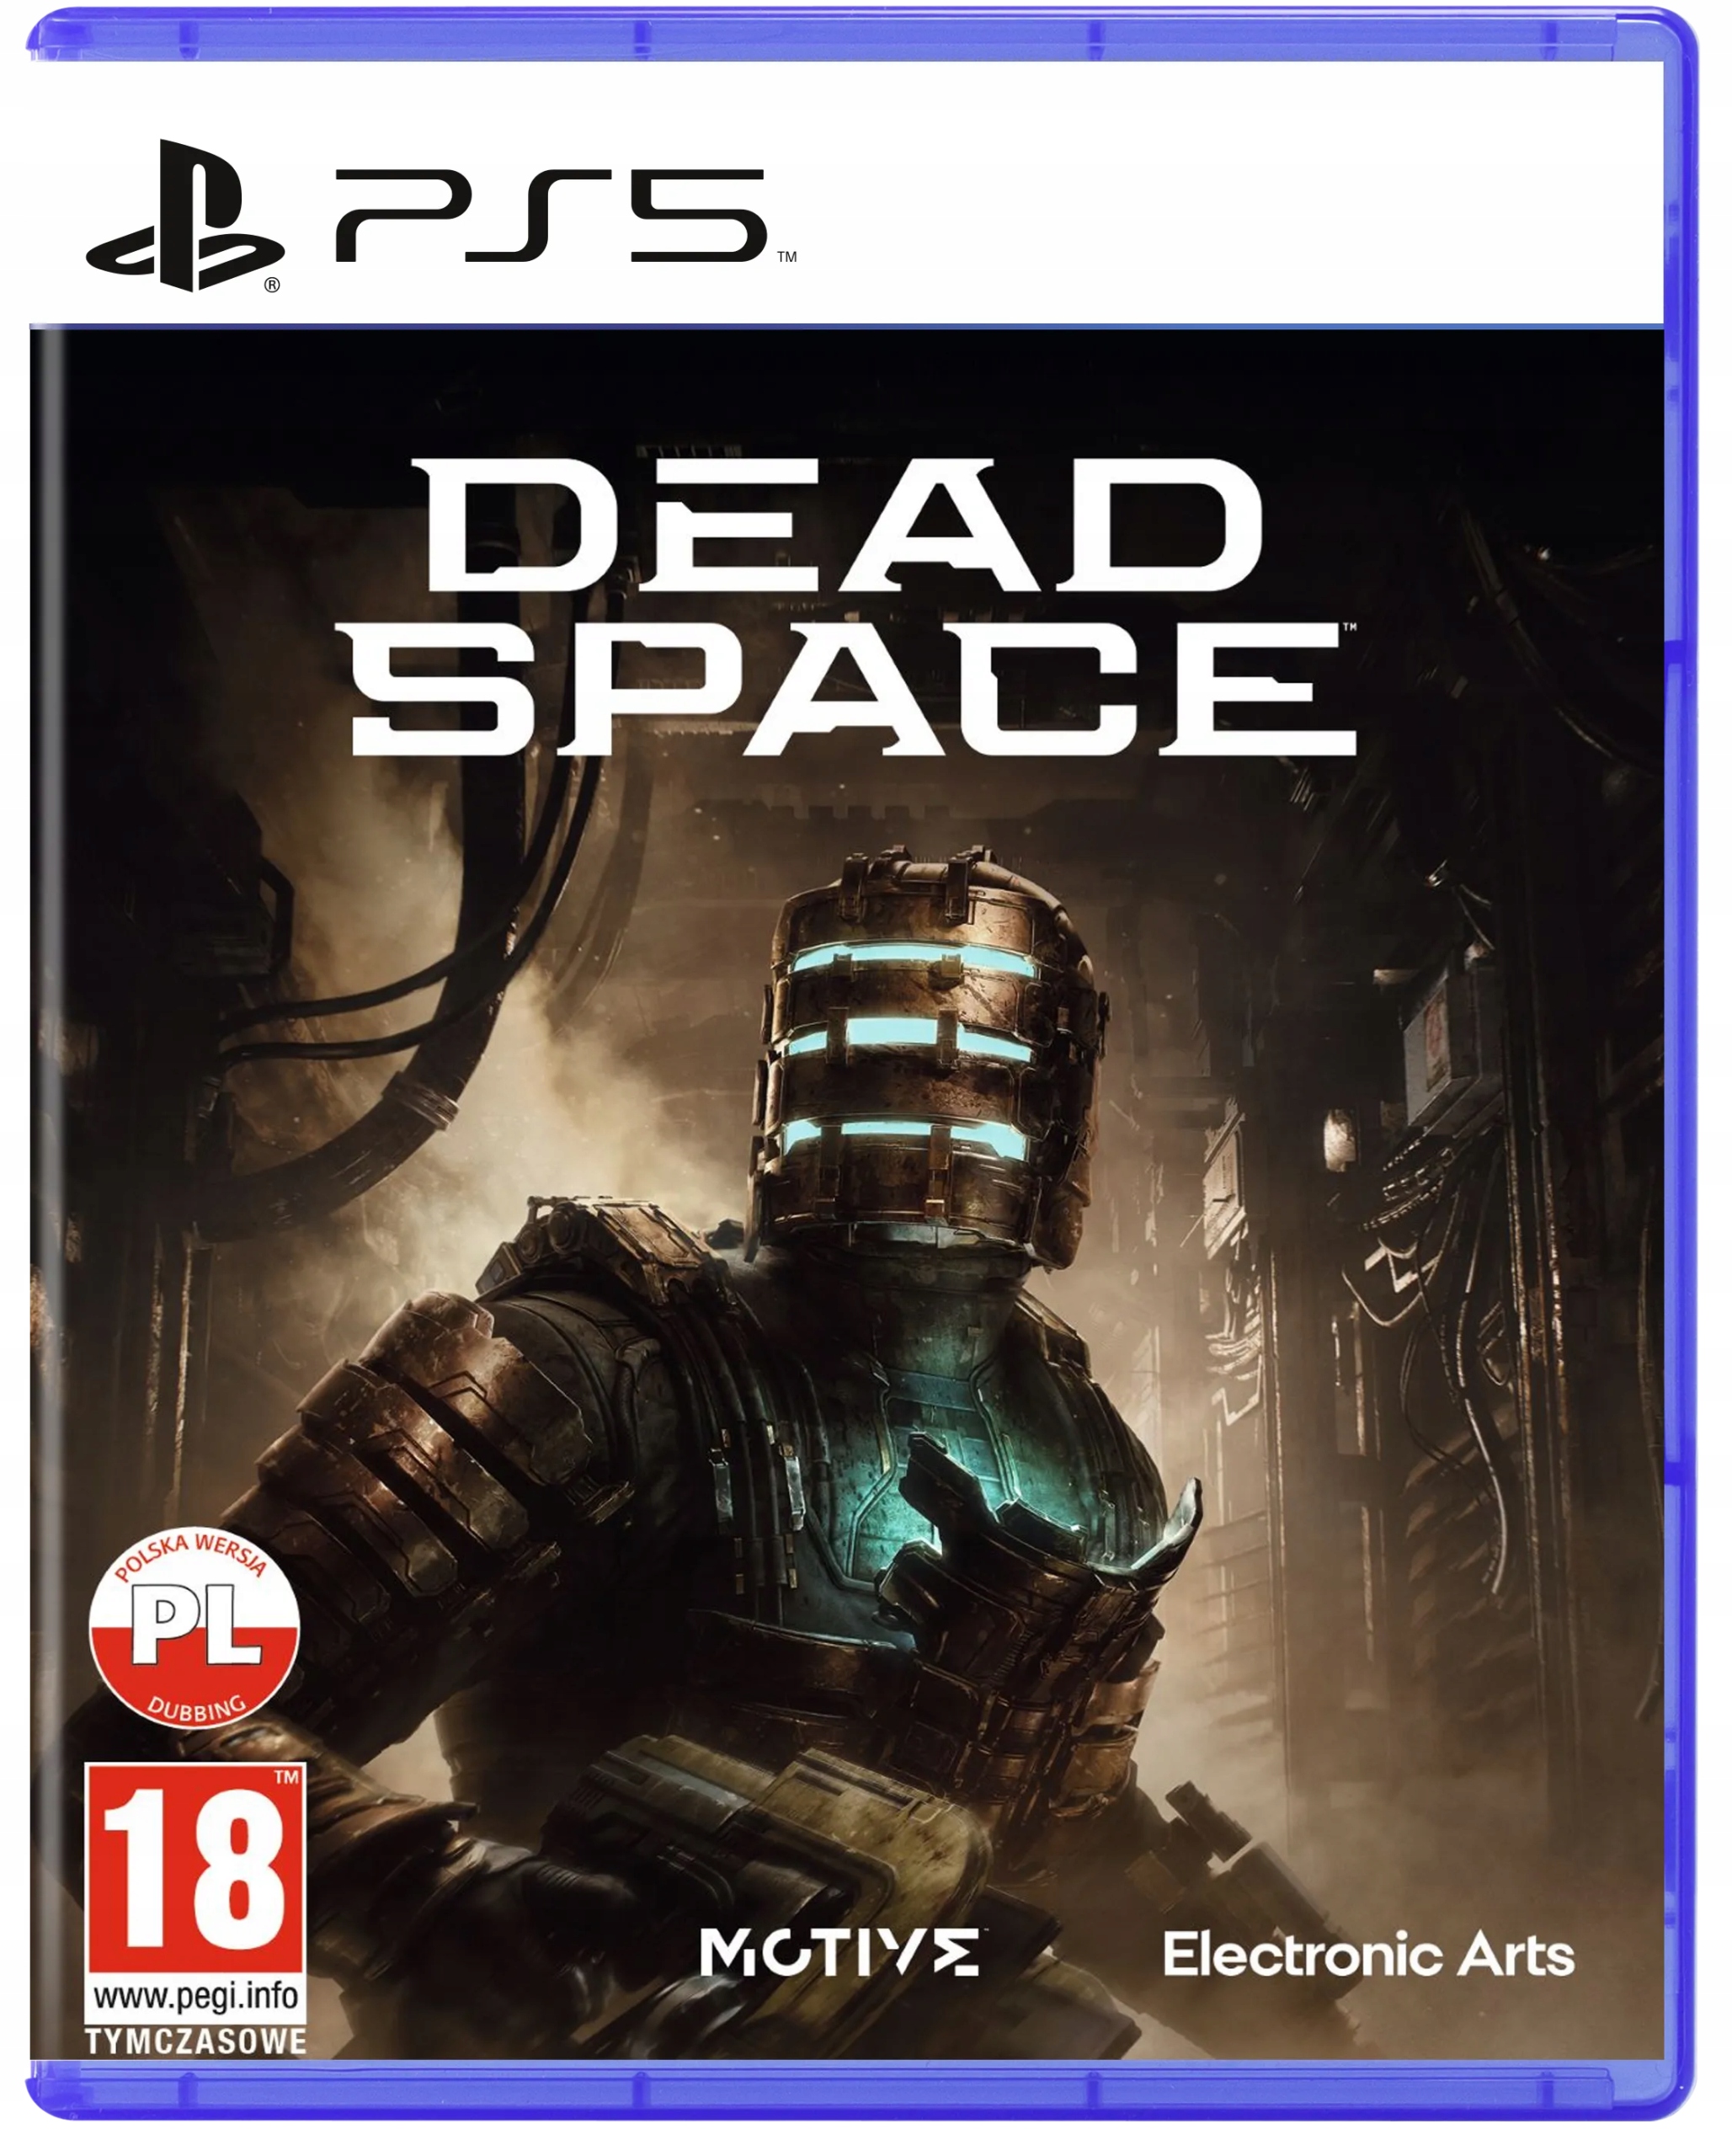 Dead space игра 2008 отзывы. Dead Space Remake ps5. Дед Спейс 1 ремейк. Дед Спейс 3 пс4. Dead Space Remake обложка.